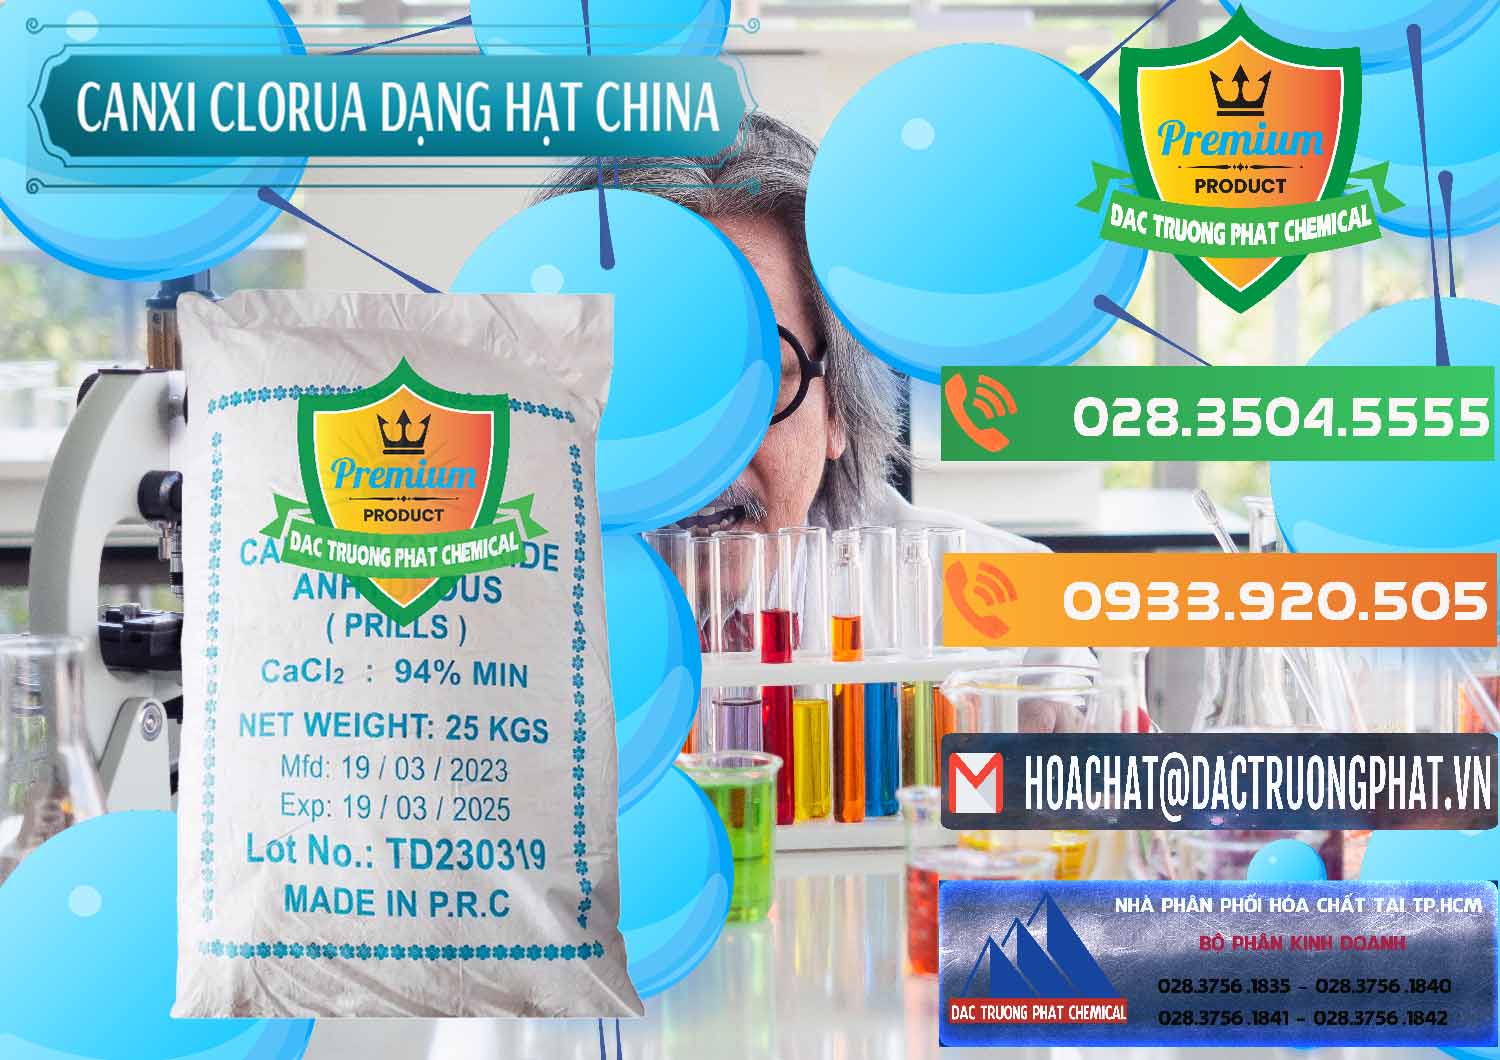 Cty bán _ cung ứng CaCl2 – Canxi Clorua 94% Dạng Hạt Trung Quốc China - 0373 - Cty cung cấp _ phân phối hóa chất tại TP.HCM - hoachatxulynuoc.com.vn